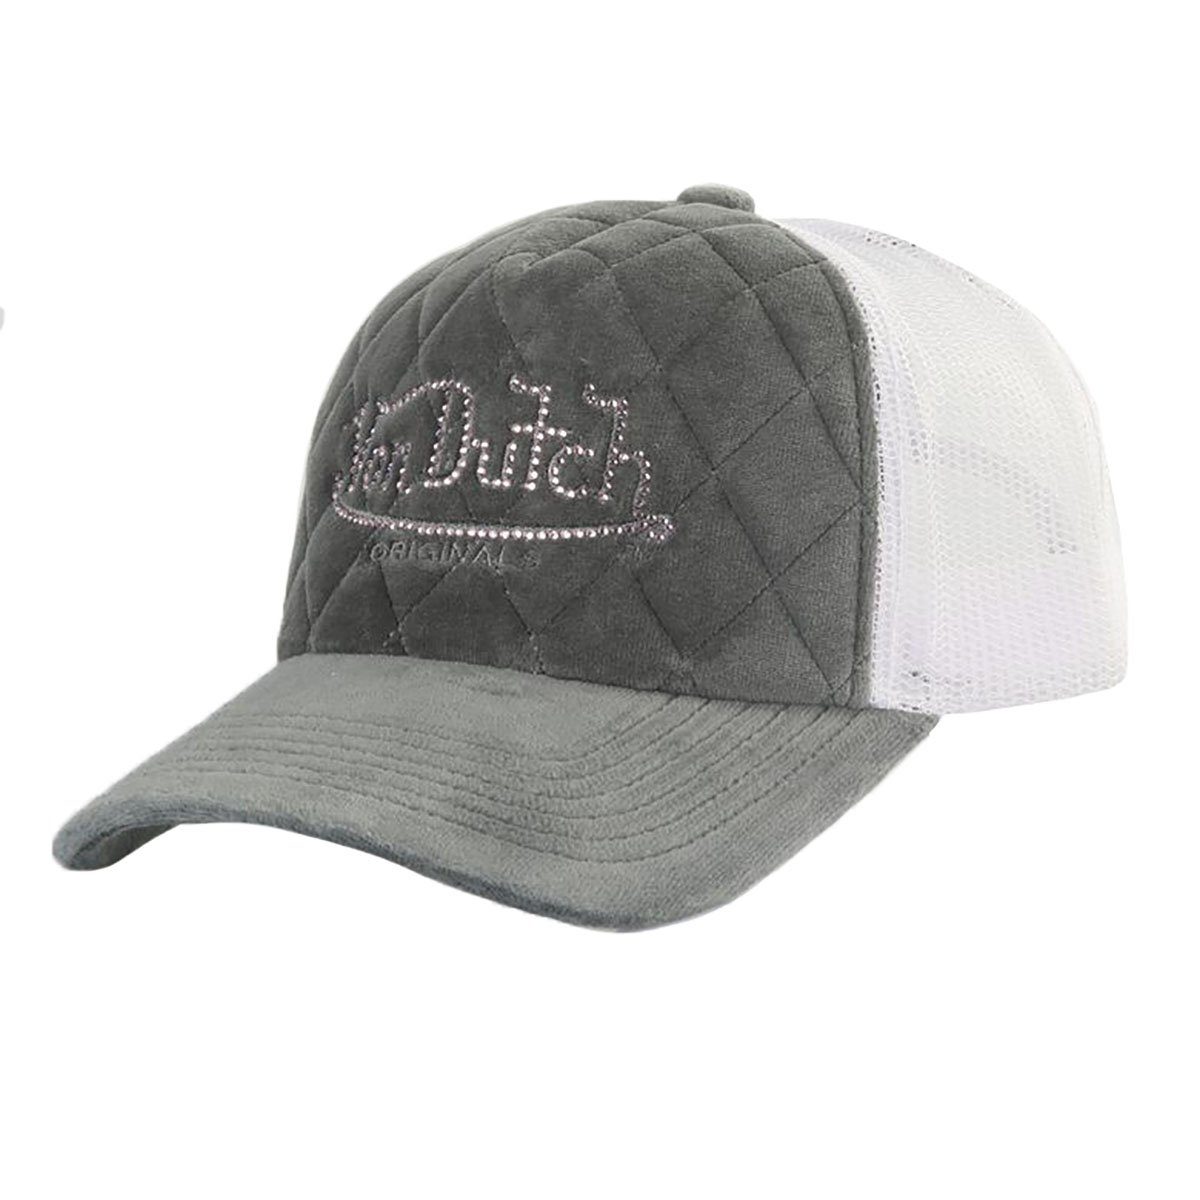 Von Dutch Trucker Cap Miami | Trucker Caps